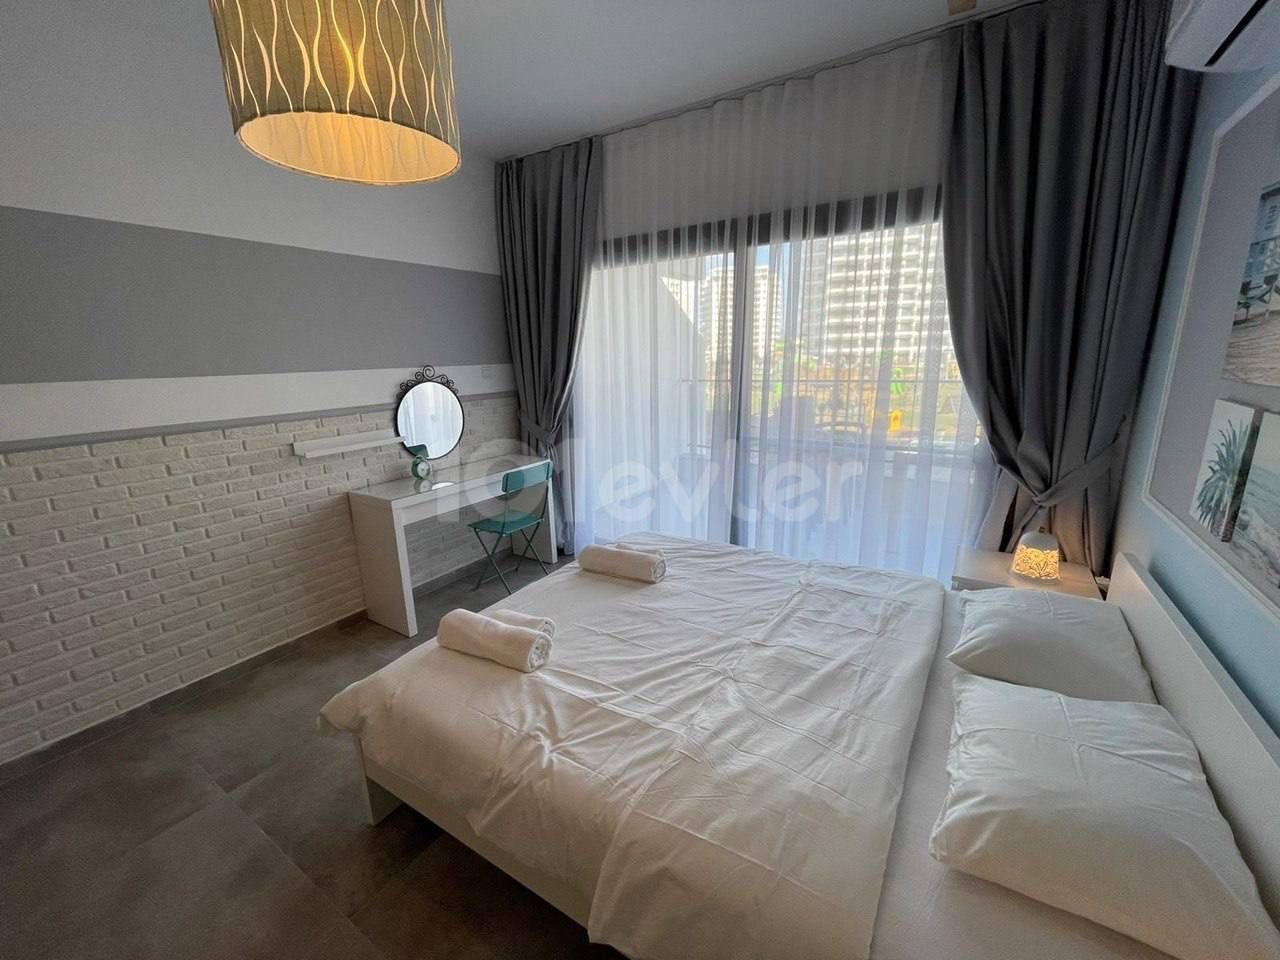 آپارتمان کوپن سرمایه گذاری در ریزورت ایسکله سزار در هتل مفهومی با میانگین بازده روزانه 30 یورو در AirBnb و رزرو